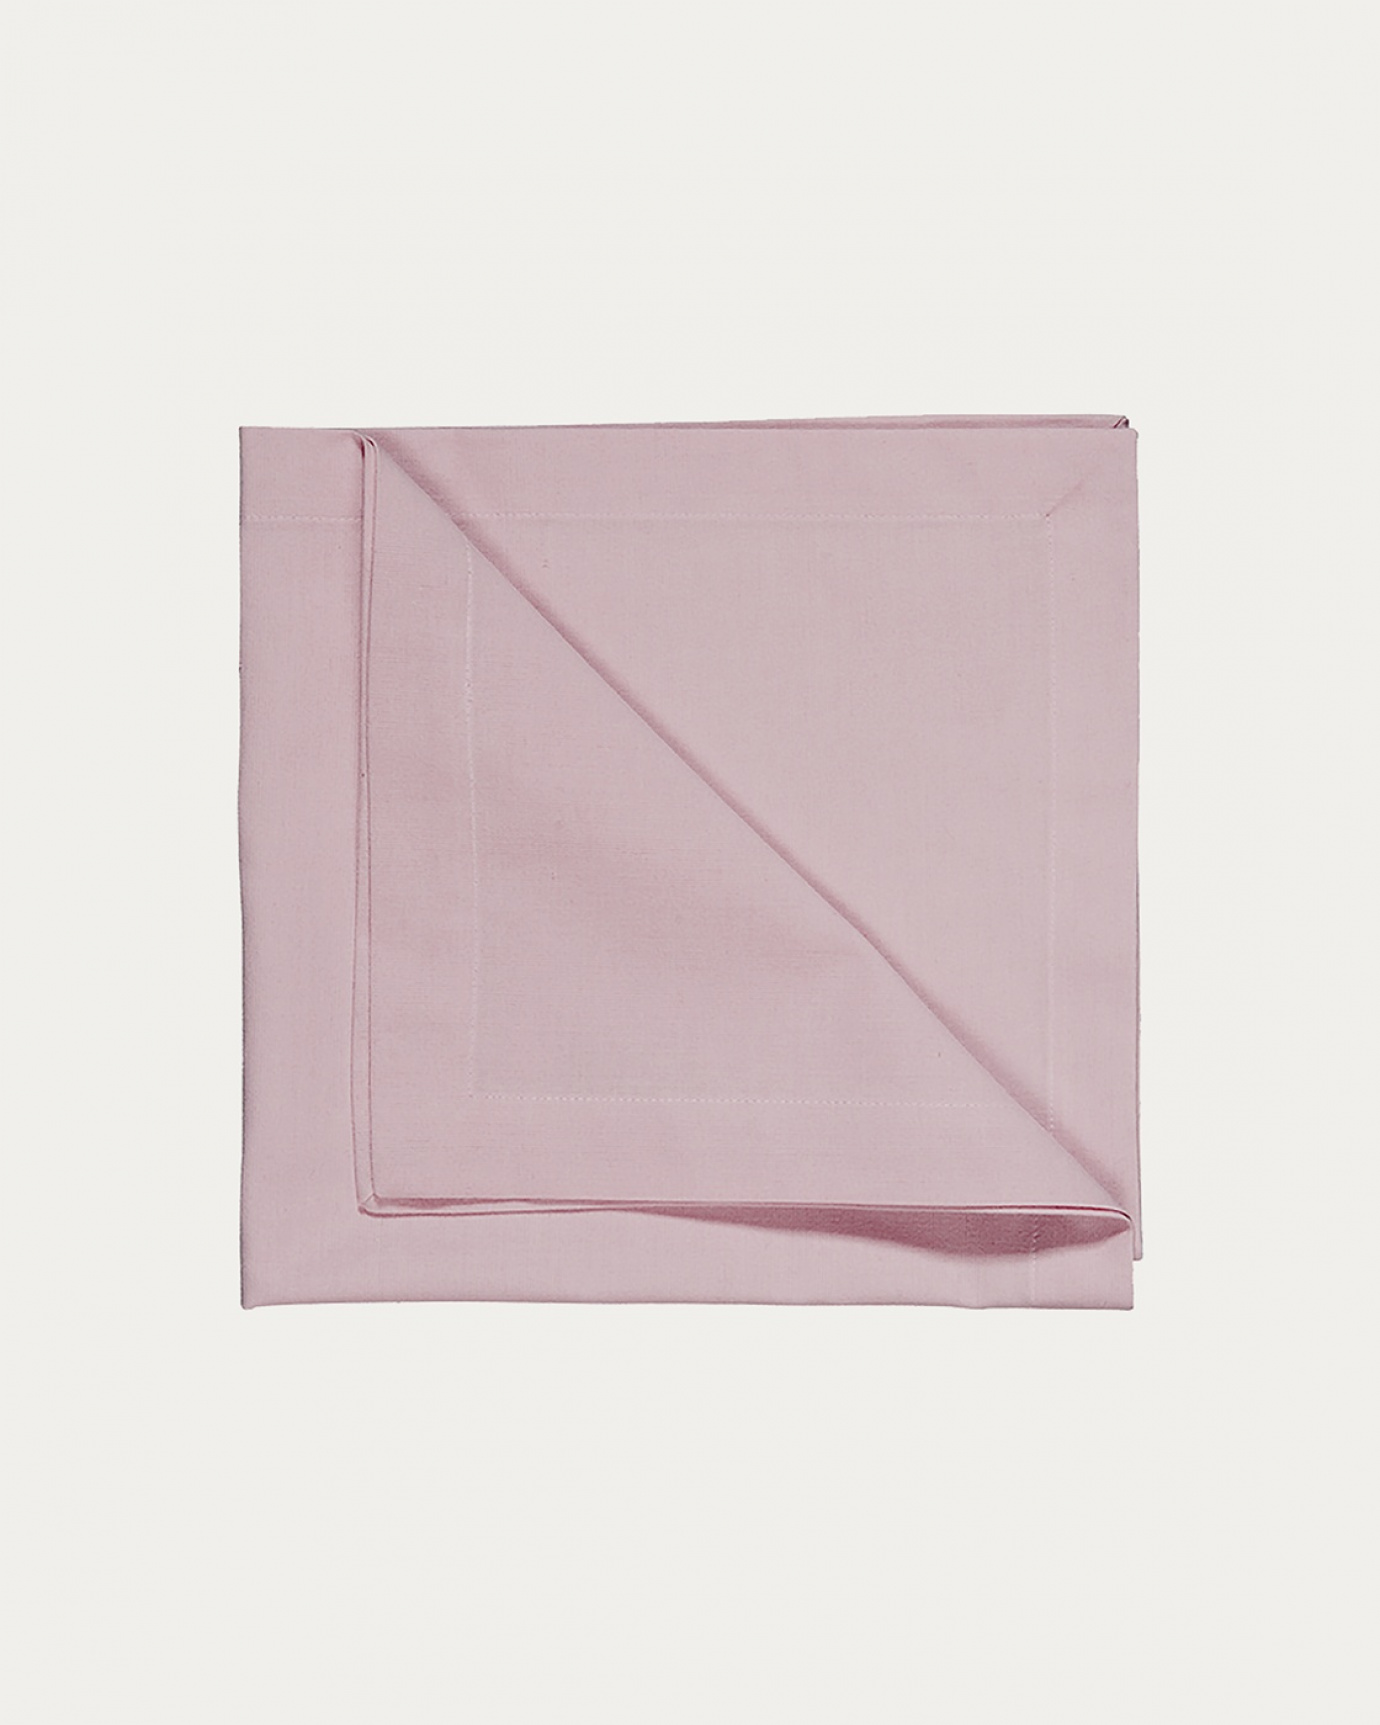 Image du produit serviette de table ROBERT rose pastel en coton doux de LINUM DESIGN. Taille 45 x 45 cm et vendu en lot de 4.